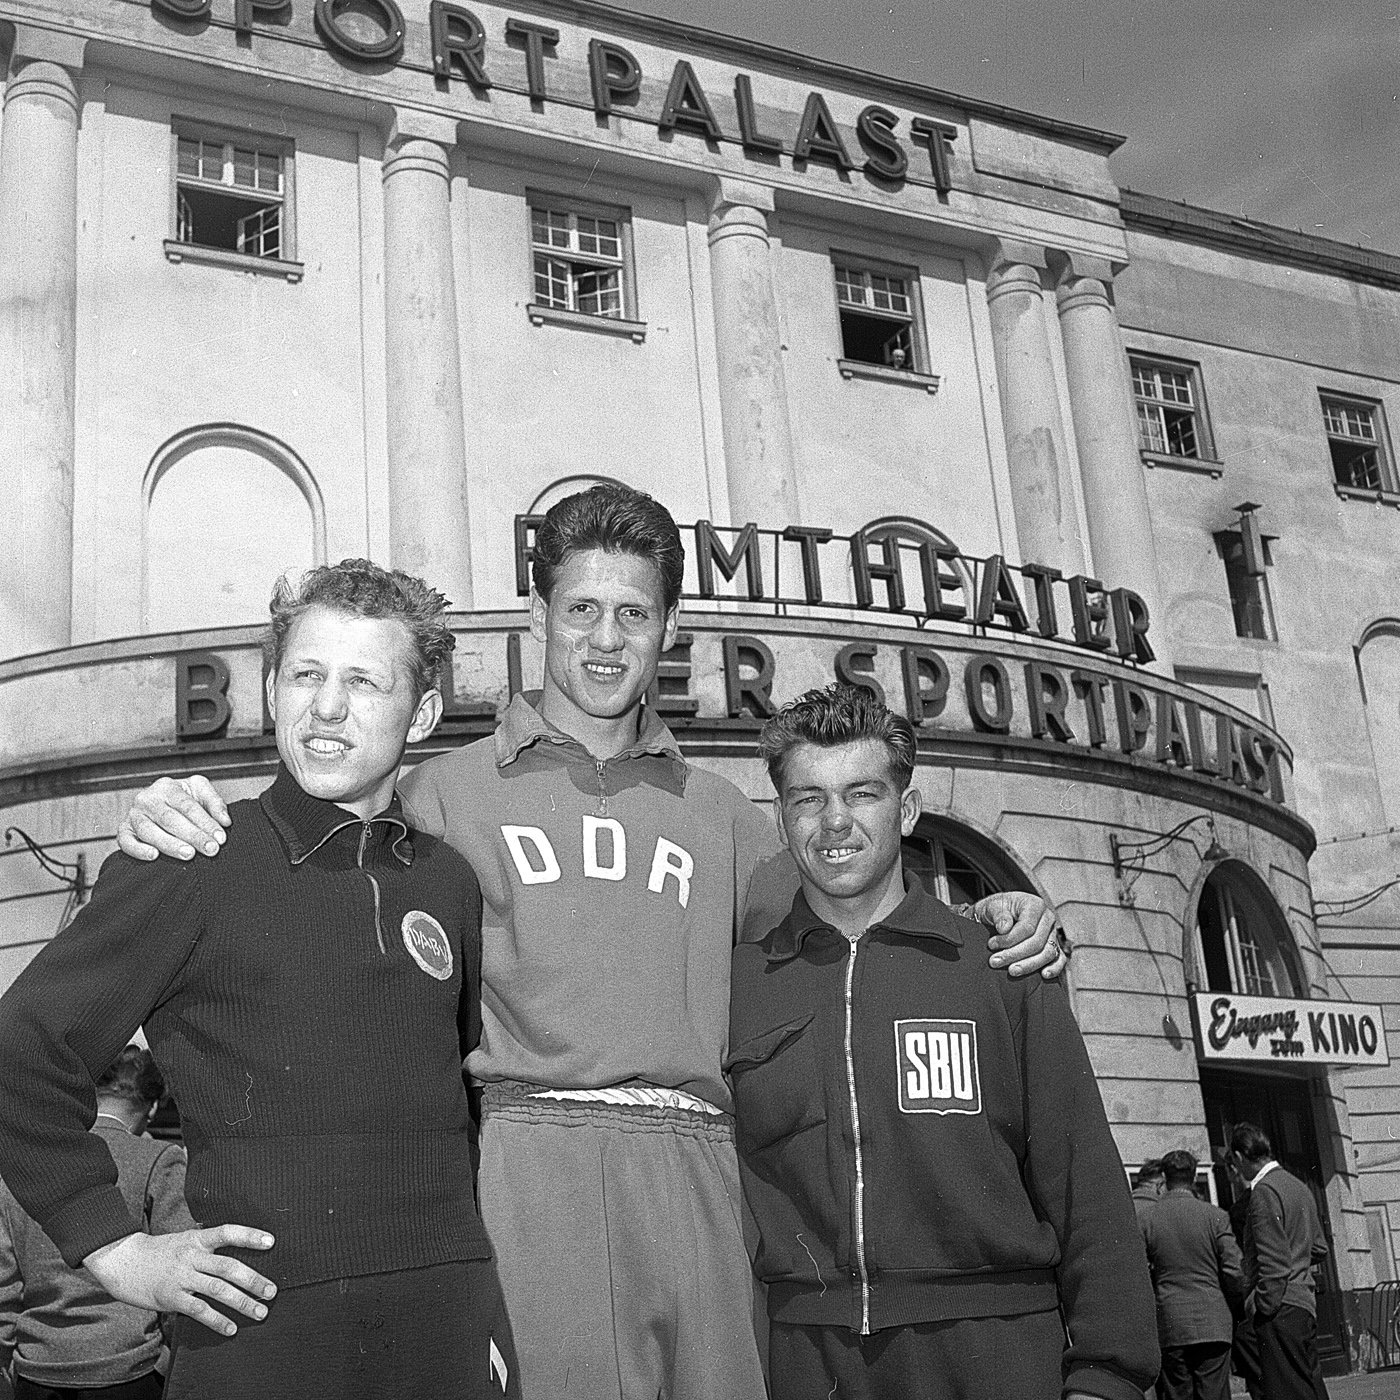 Box-Europameisterschaften der Amateure im Sportpalast 1955 (Sportmuseum Berlin CC0)